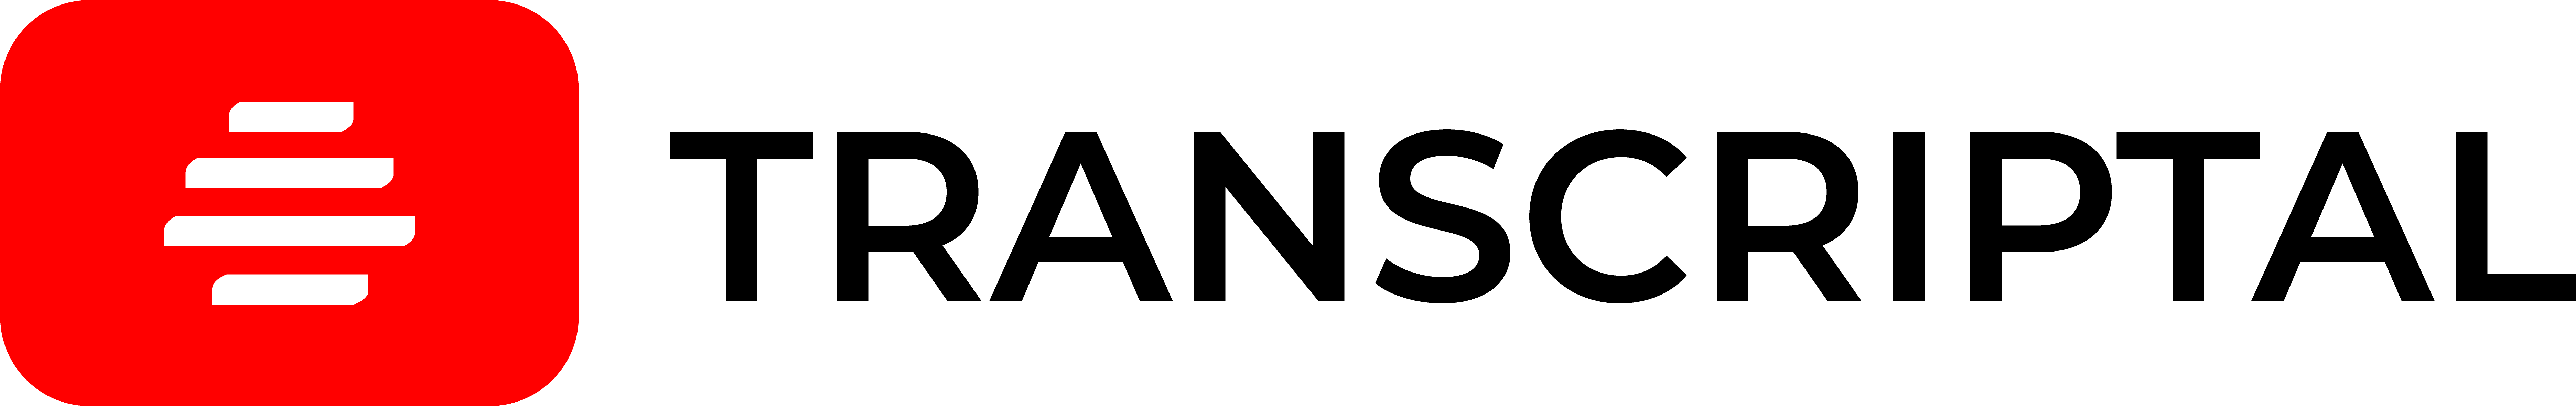 Transcriptal-logo1